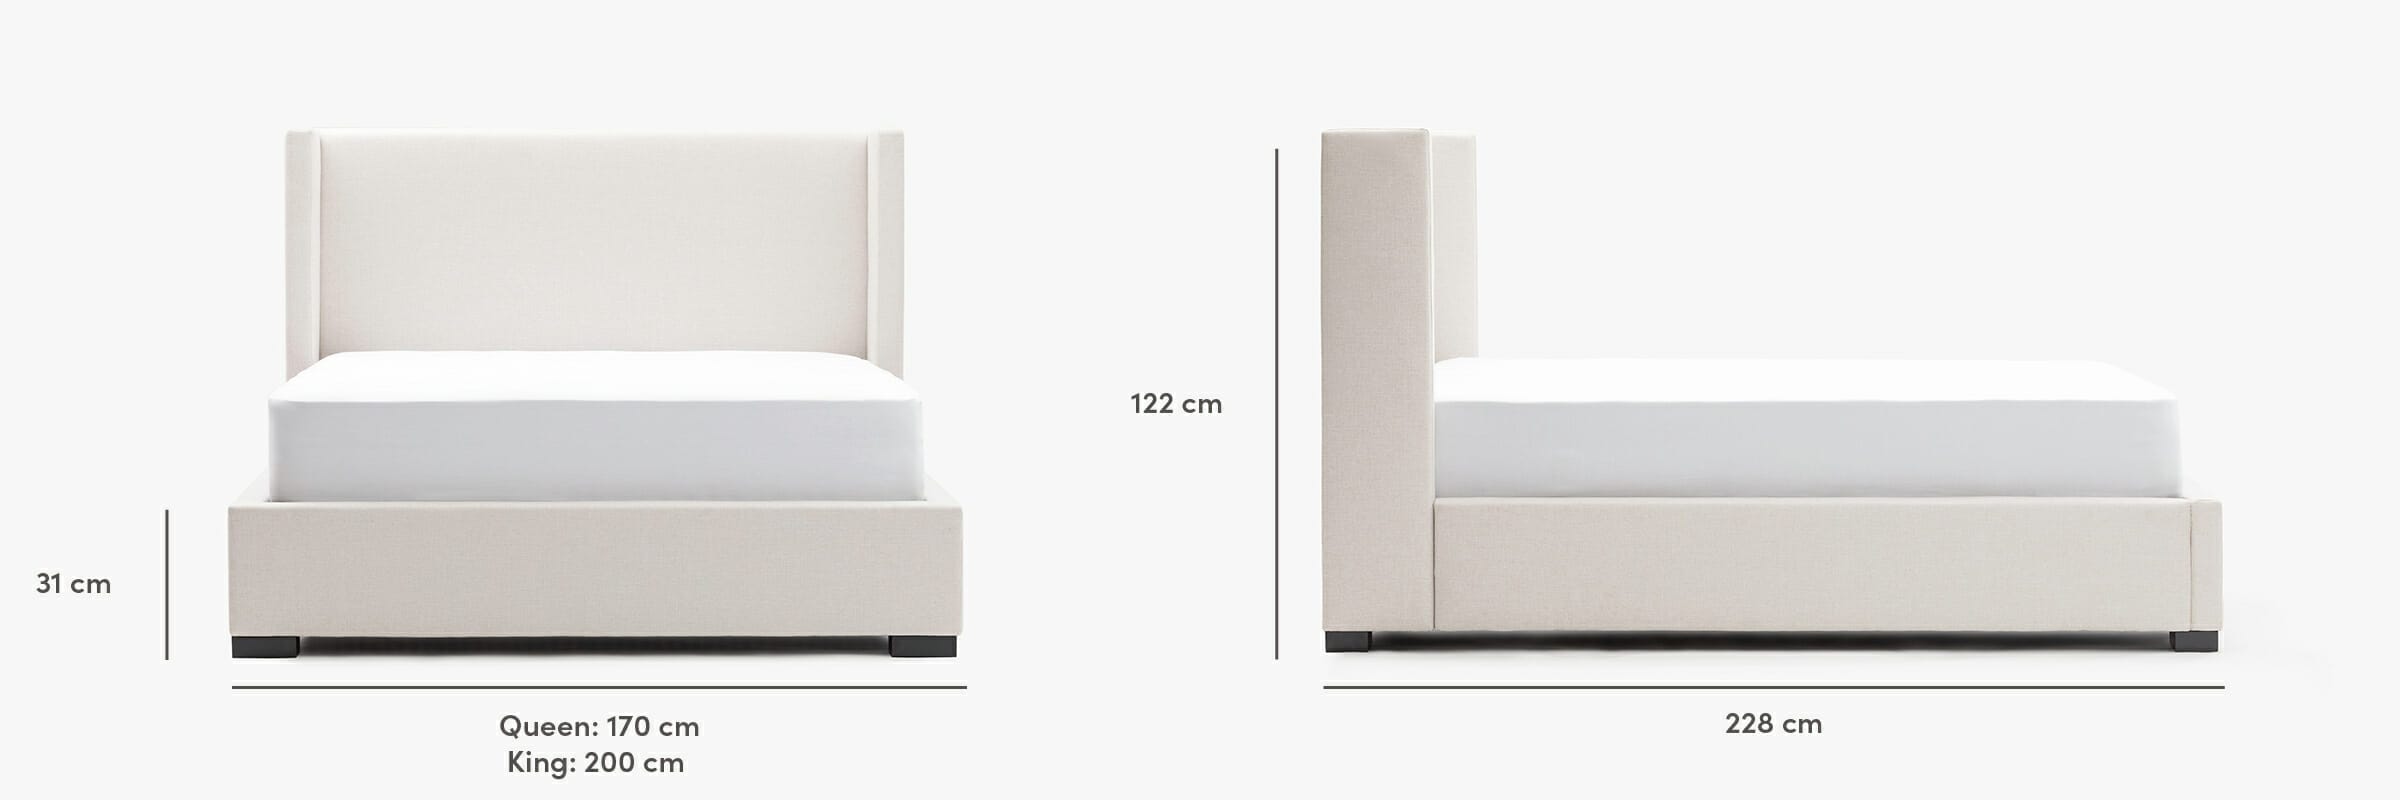 Osaka bed dimensions